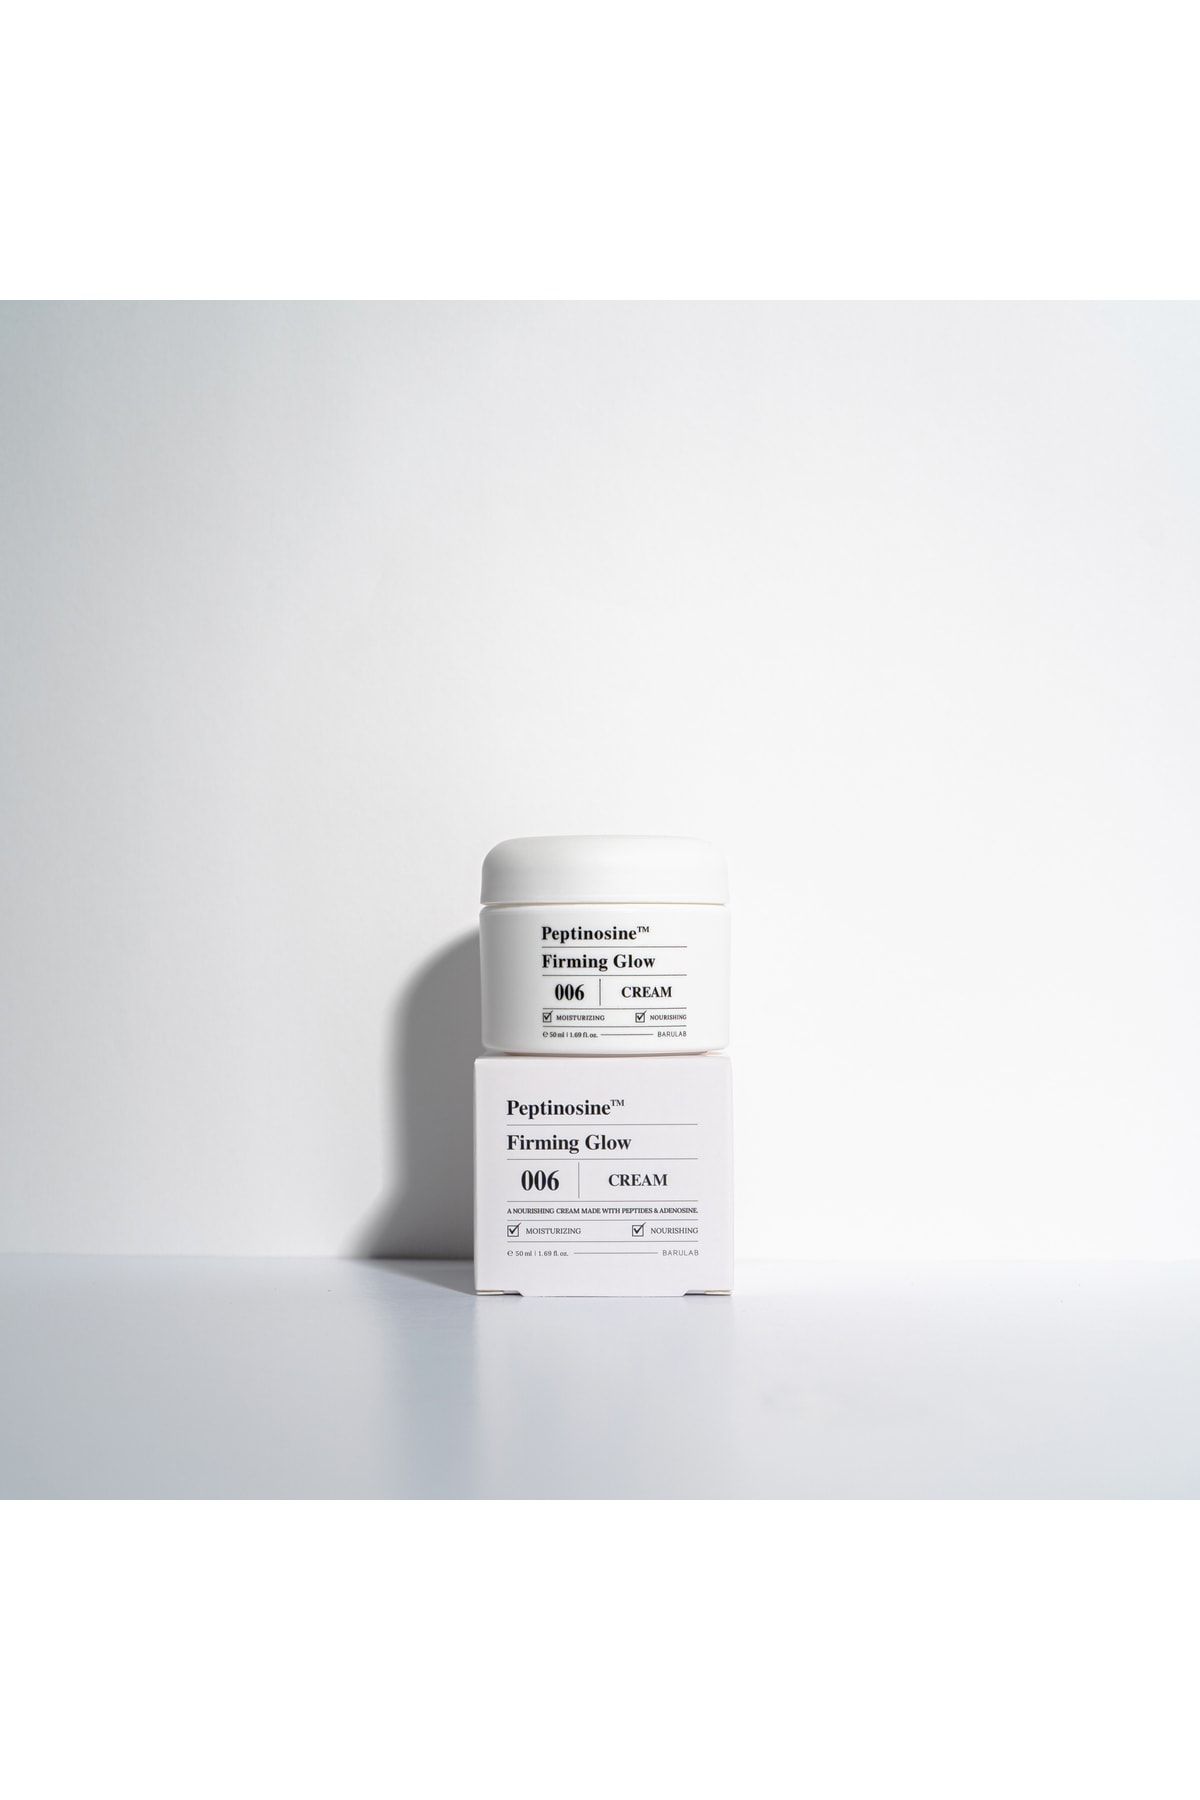 Barulab Peptinosine™ Firming Glow Cream - Kırışıklık Önleyici Parlatıcı Krem 50ml